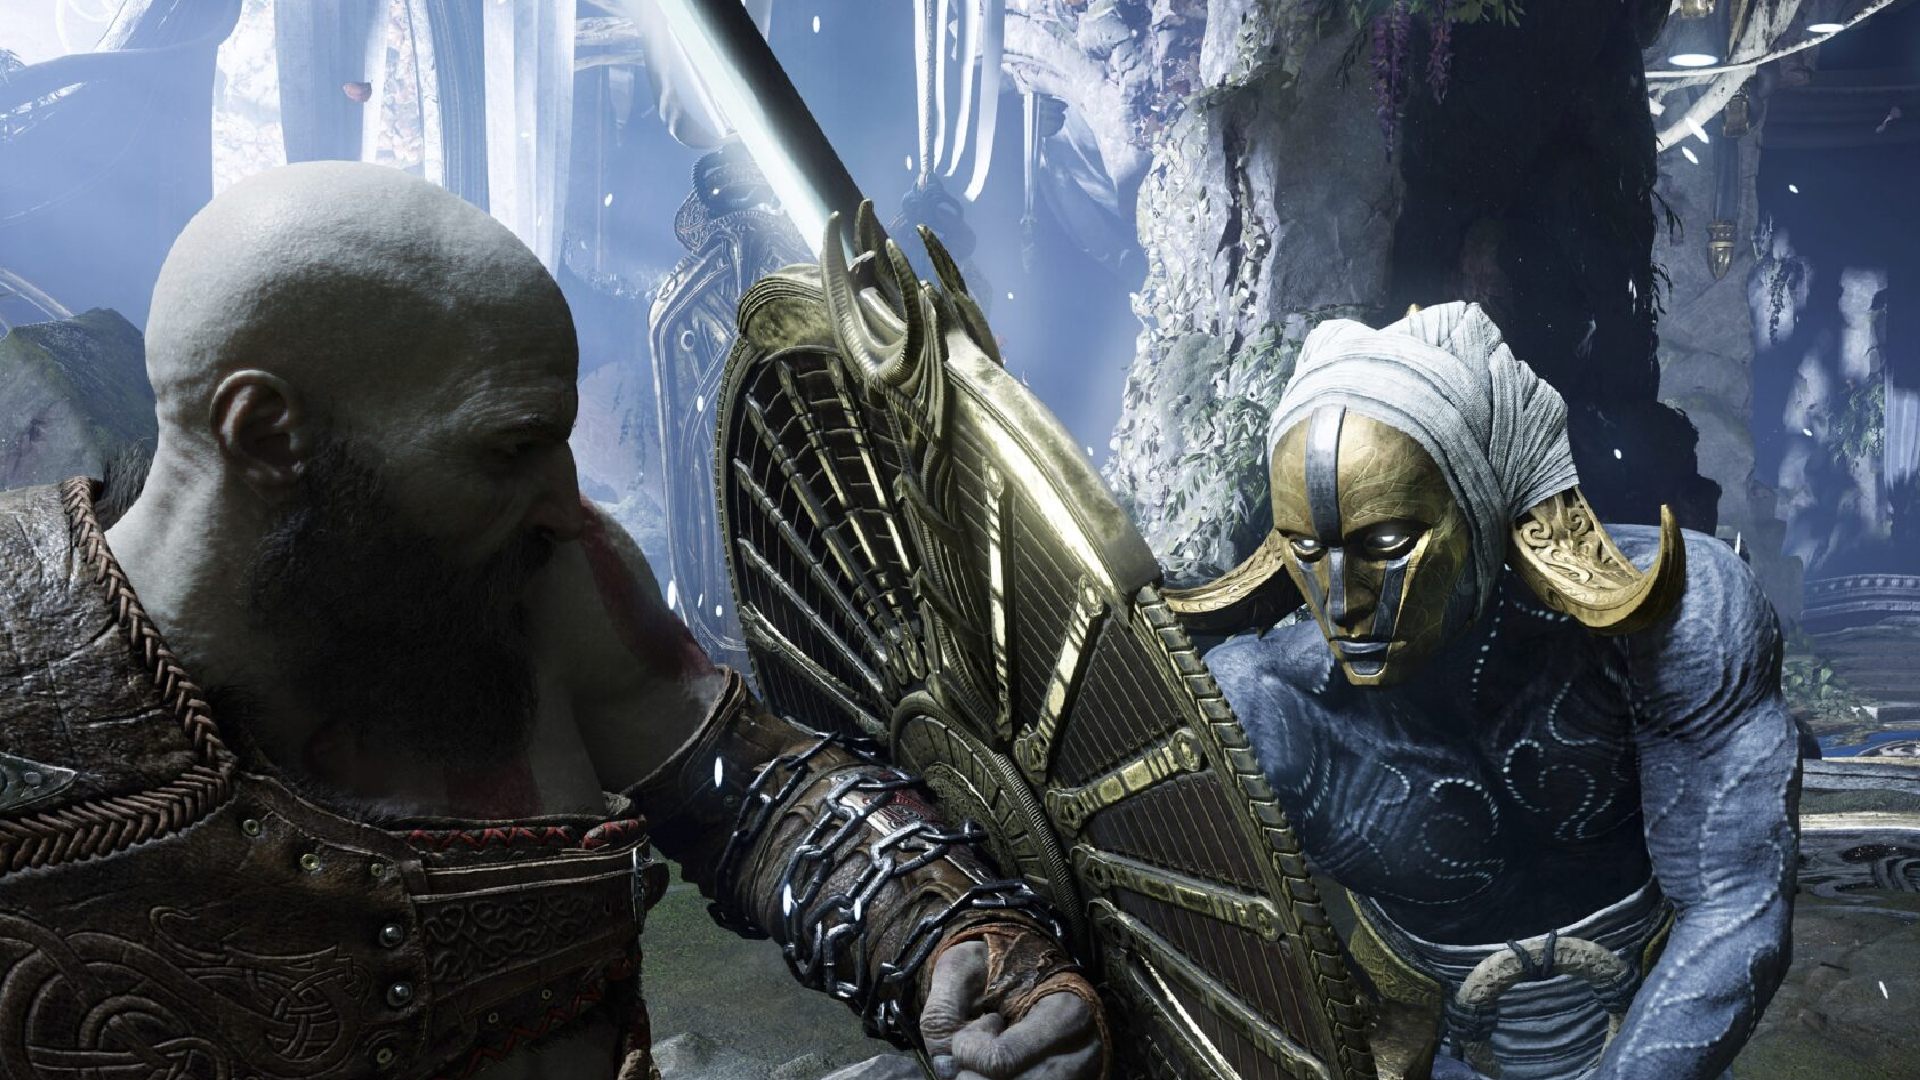 God of War Ragnarok Weapons: Kratos can be seen blocking an attack